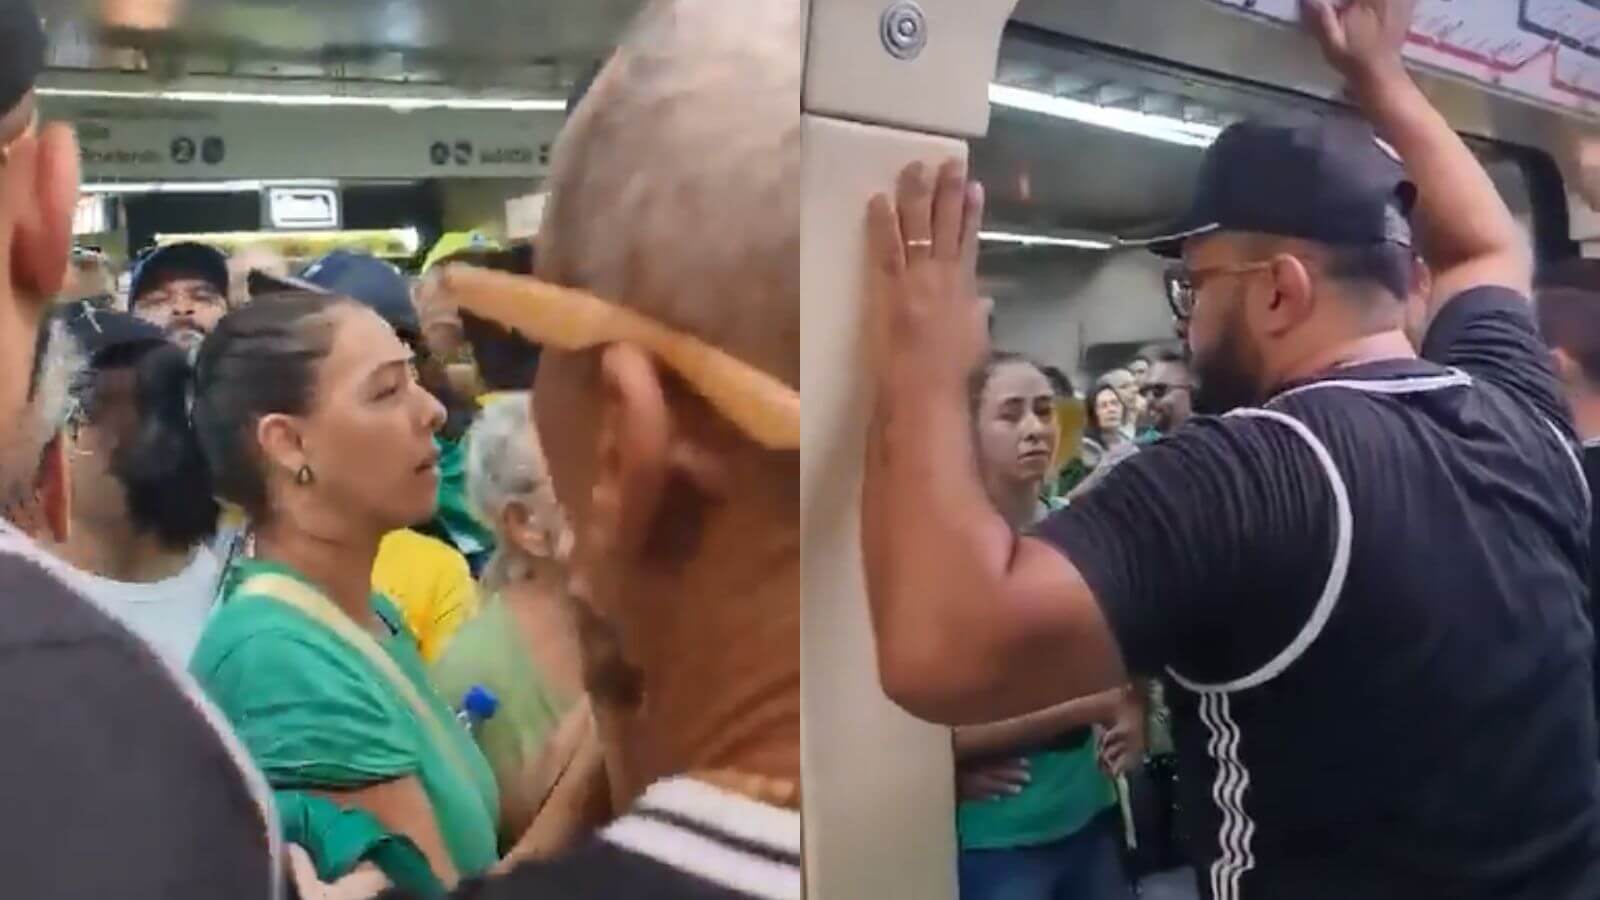 Membros da Gaviões barram entrada de bolsonaristas em metrô